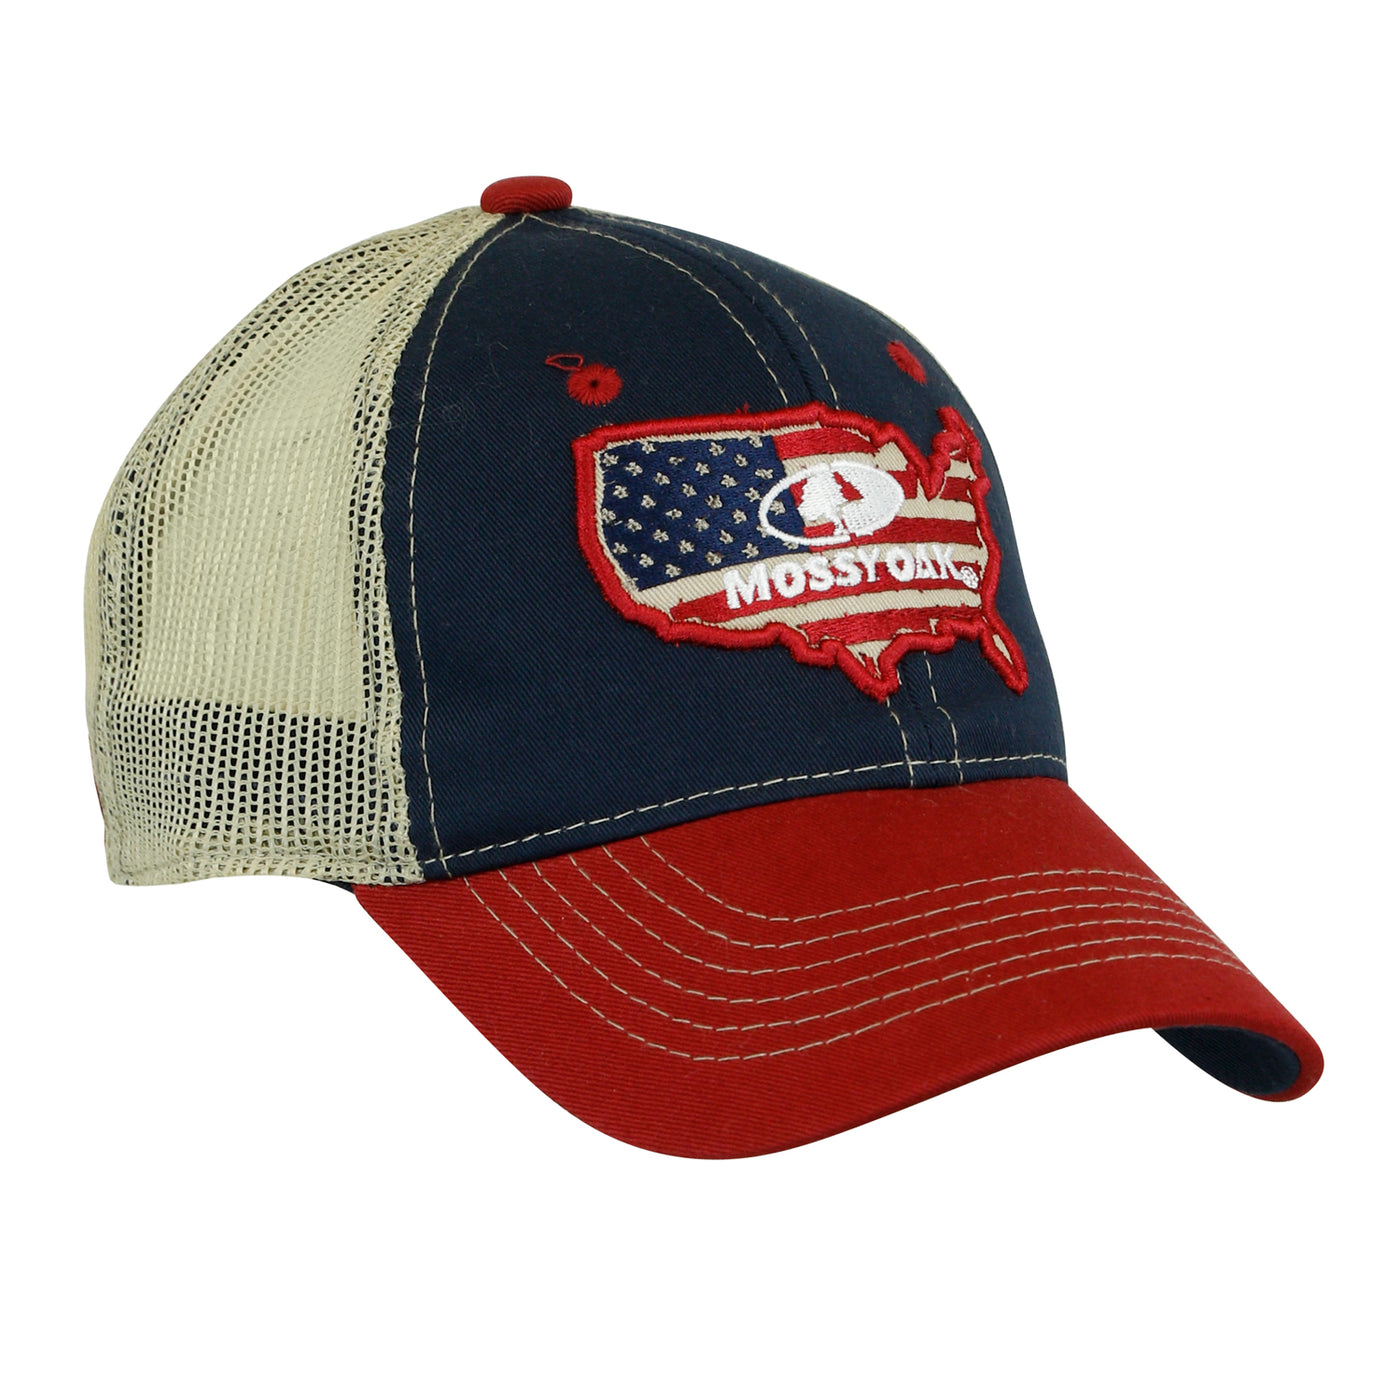 Mossy Oak USA Trucker Cap – The Mossy Oak Store